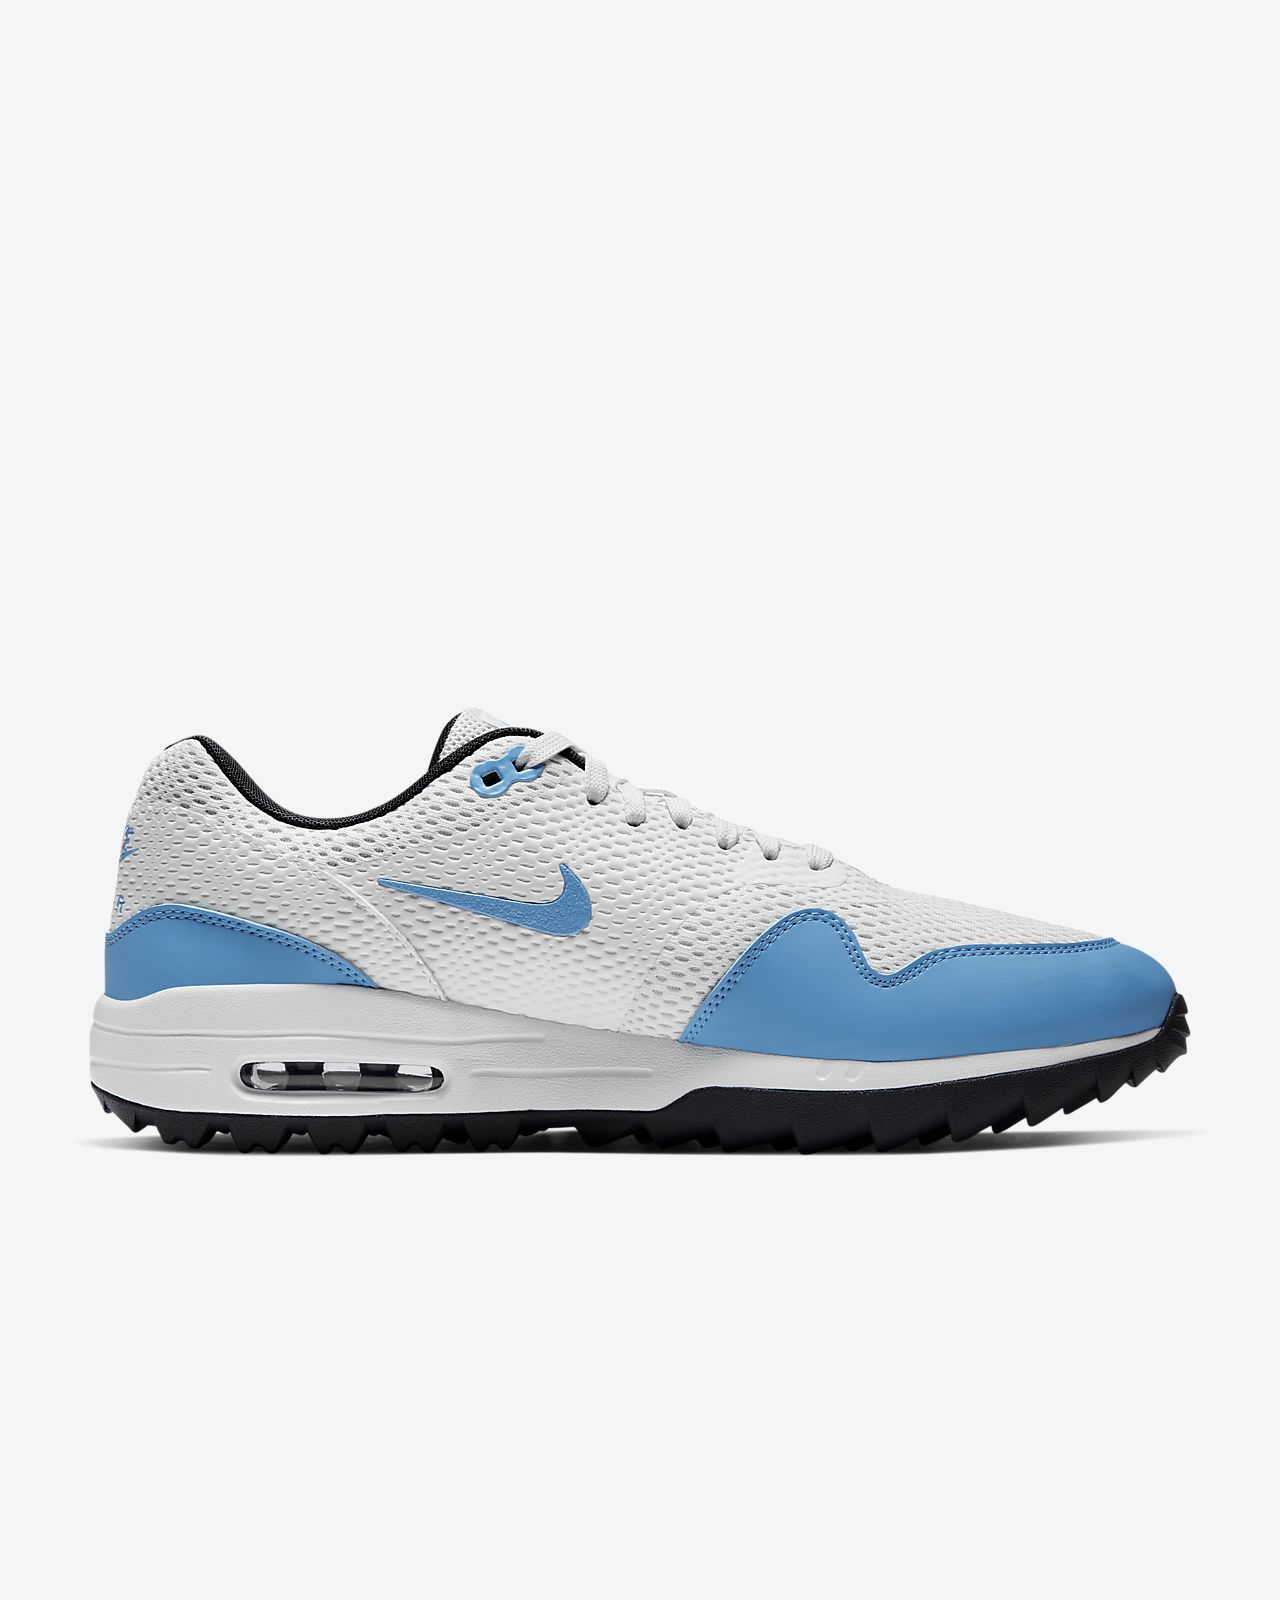 nike air max 1g golf shoes blue